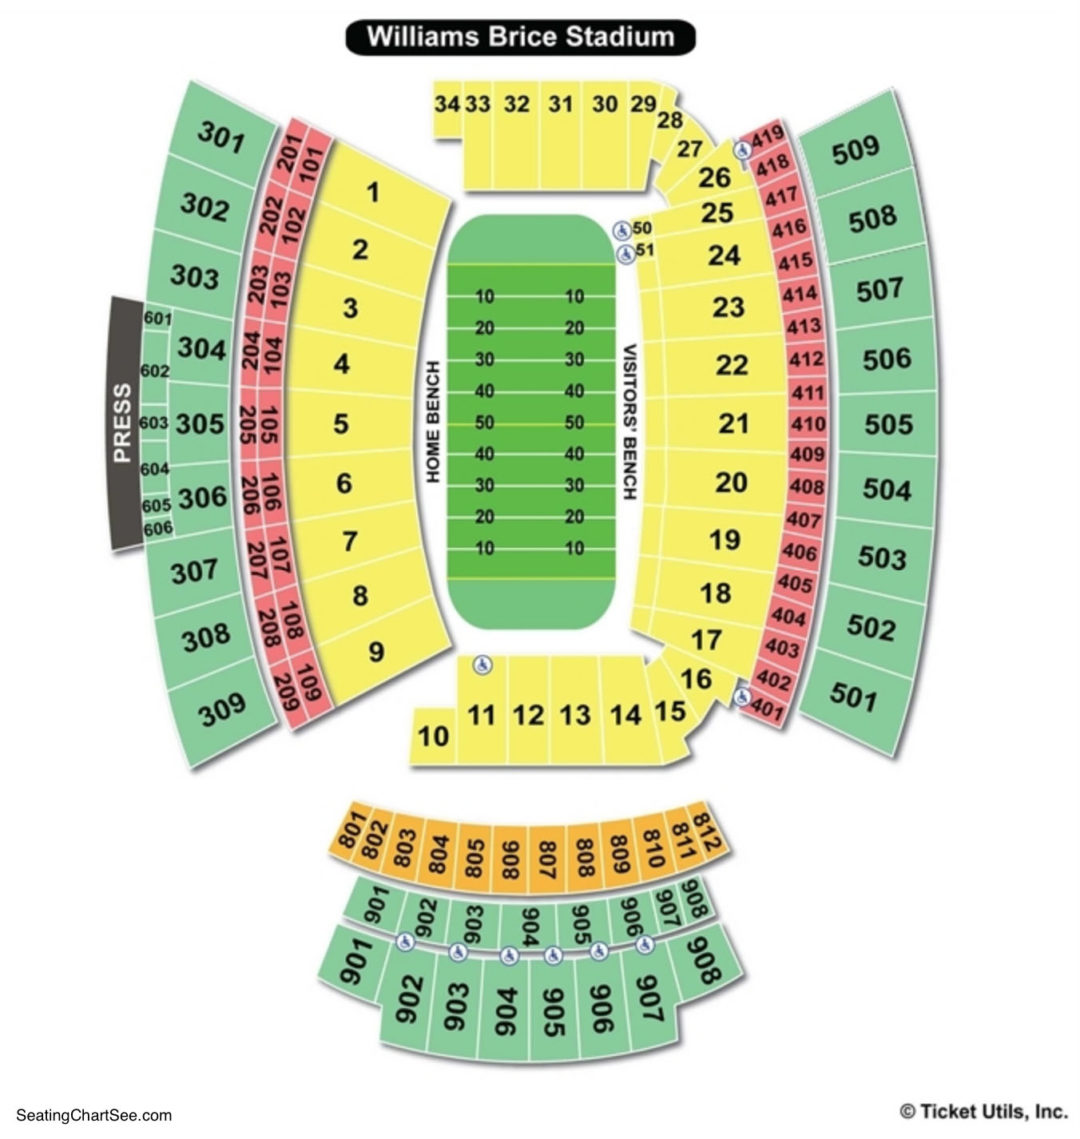 Williams Brice Stadium Seating Chart